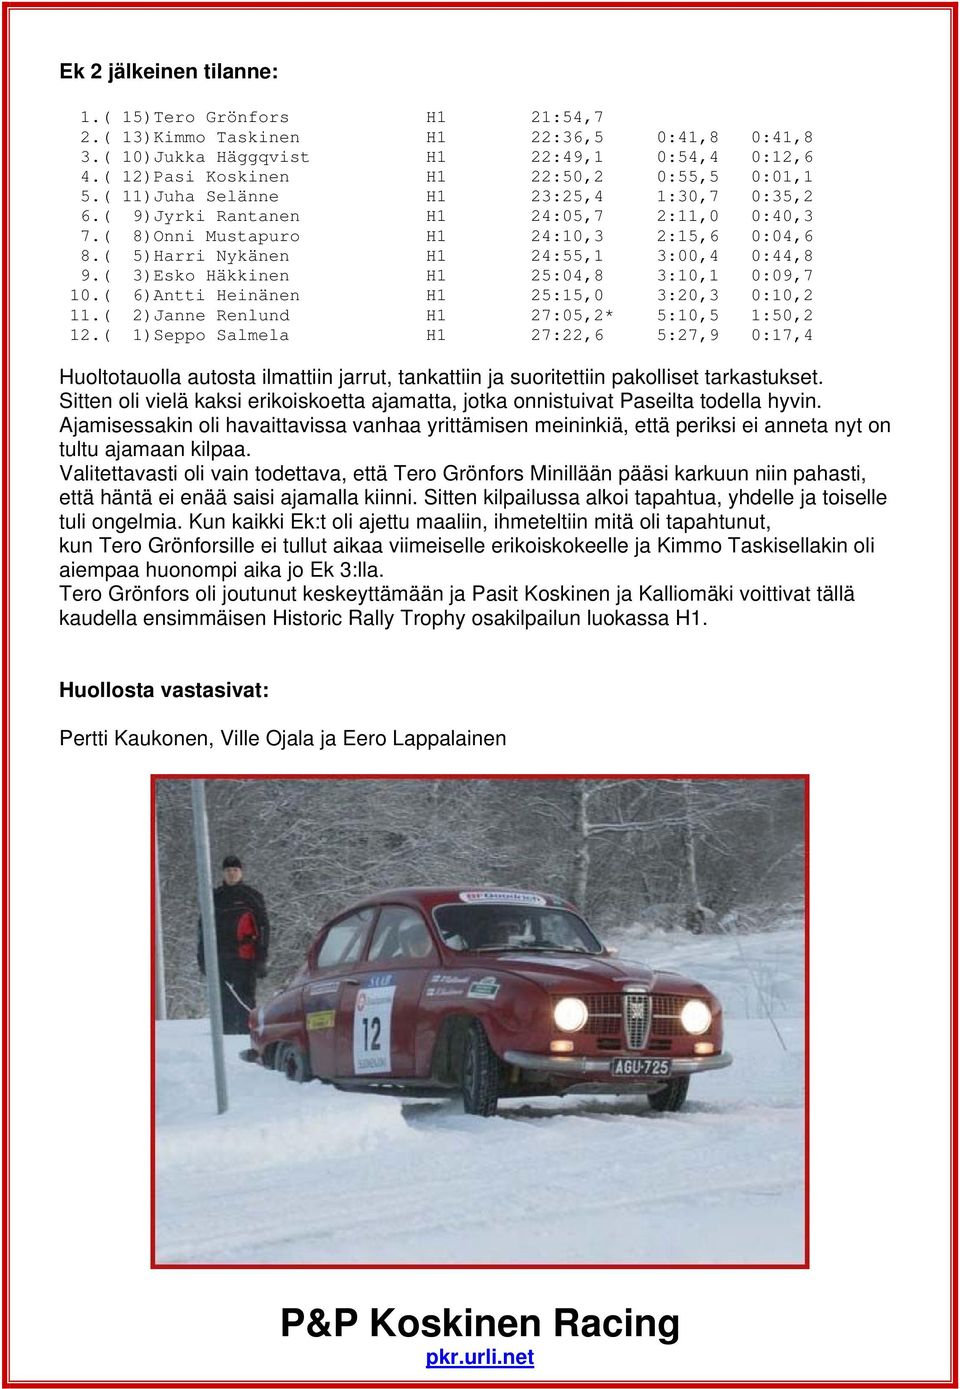 ( 3)Esko Häkkinen H1 25:04,8 3:10,1 0:09,7 10.( 6)Antti Heinänen H1 25:15,0 3:20,3 0:10,2 11.( 2)Janne Renlund H1 27:05,2* 5:10,5 1:50,2 12.